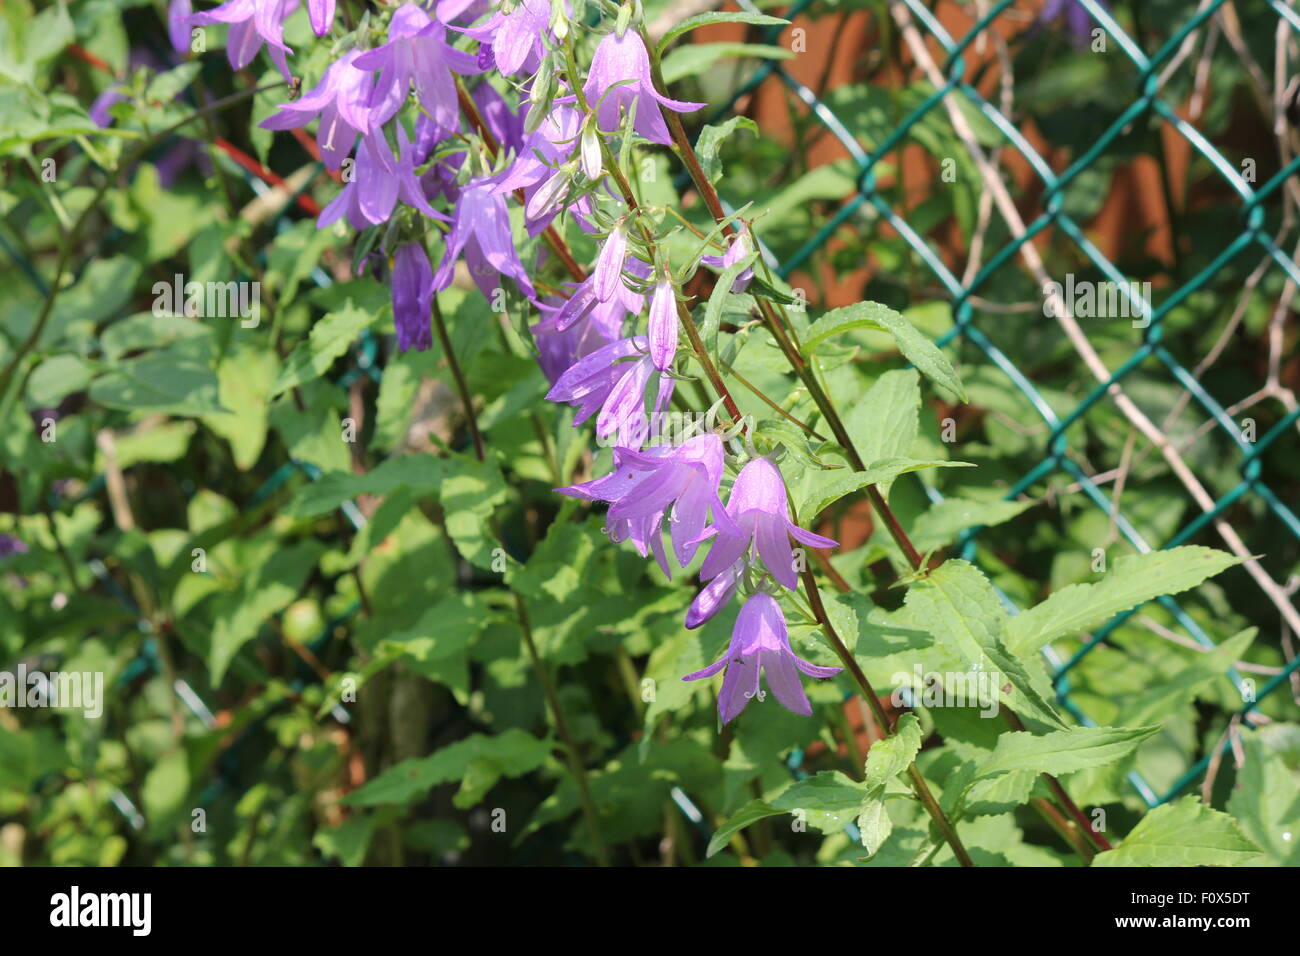 Bellflower (Campanula rapunculoides rampante), bonito color violáceo púrpura invasora, flores en forma de campana trepar una valla Foto de stock